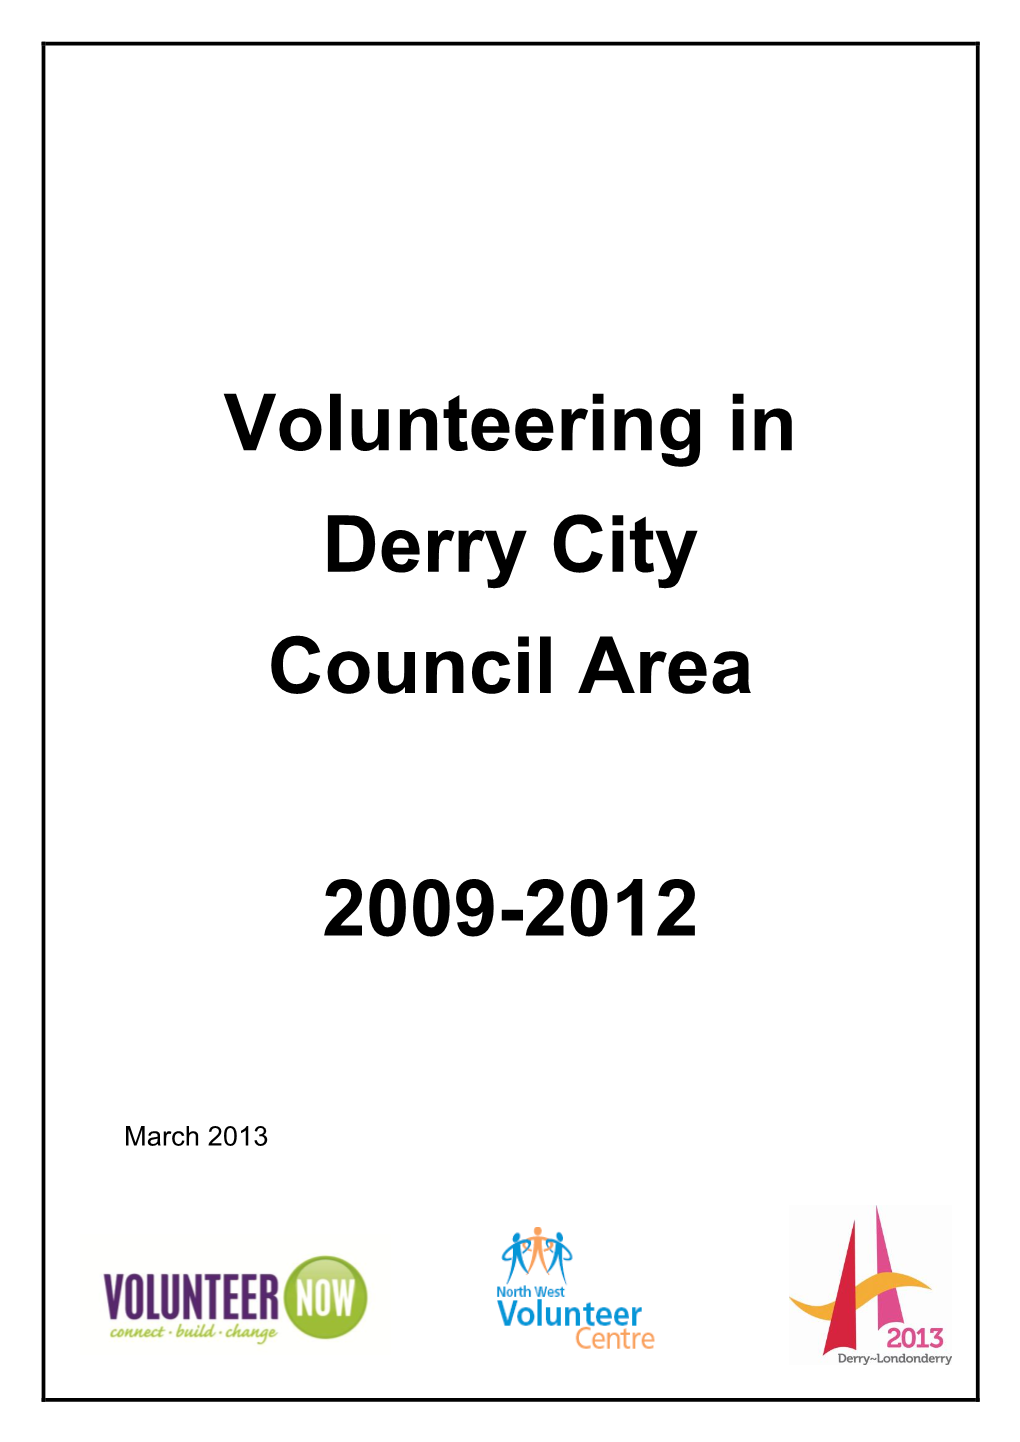 Volunteering in Derry City Council Area 2009-2012